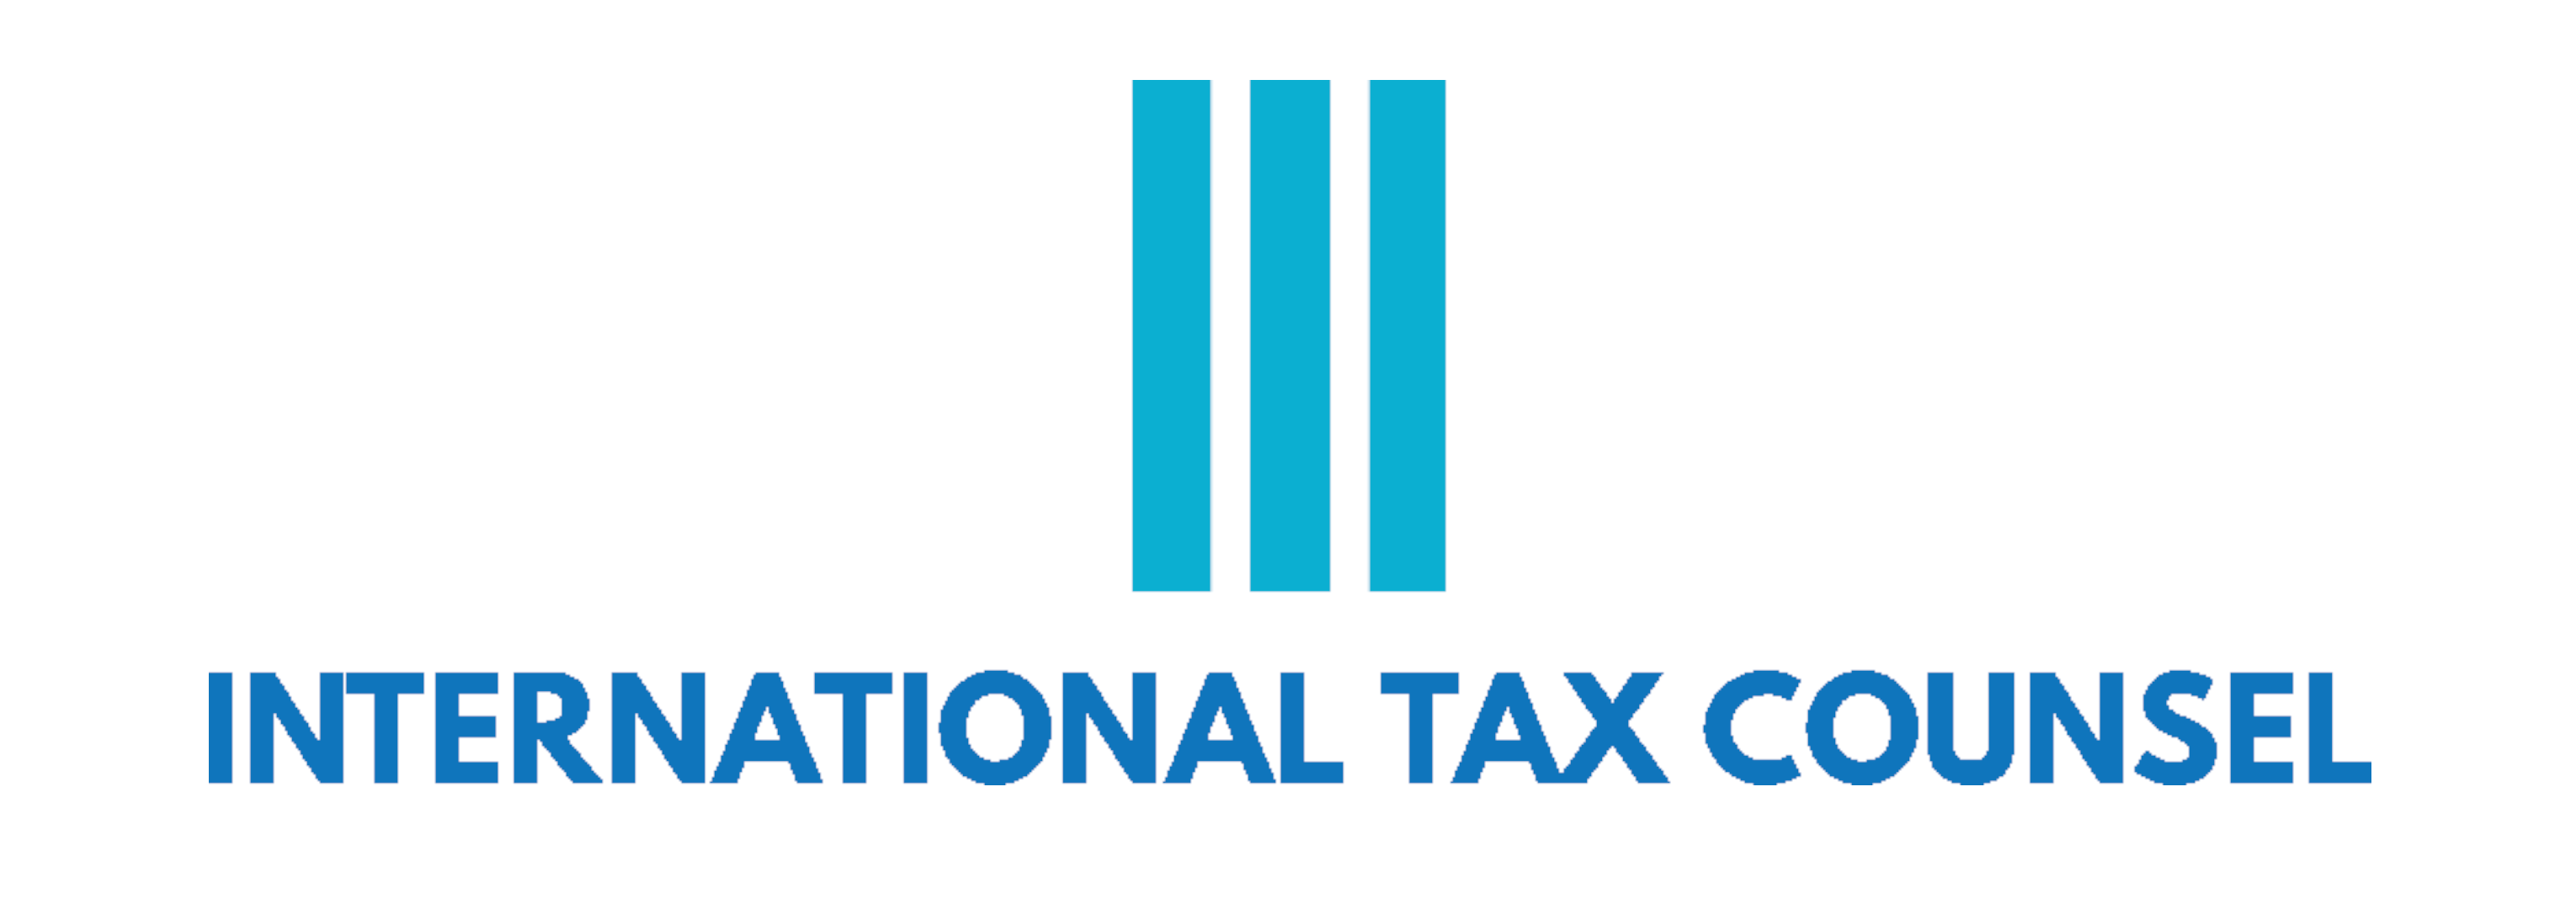 International Tax Counsel Ltd.